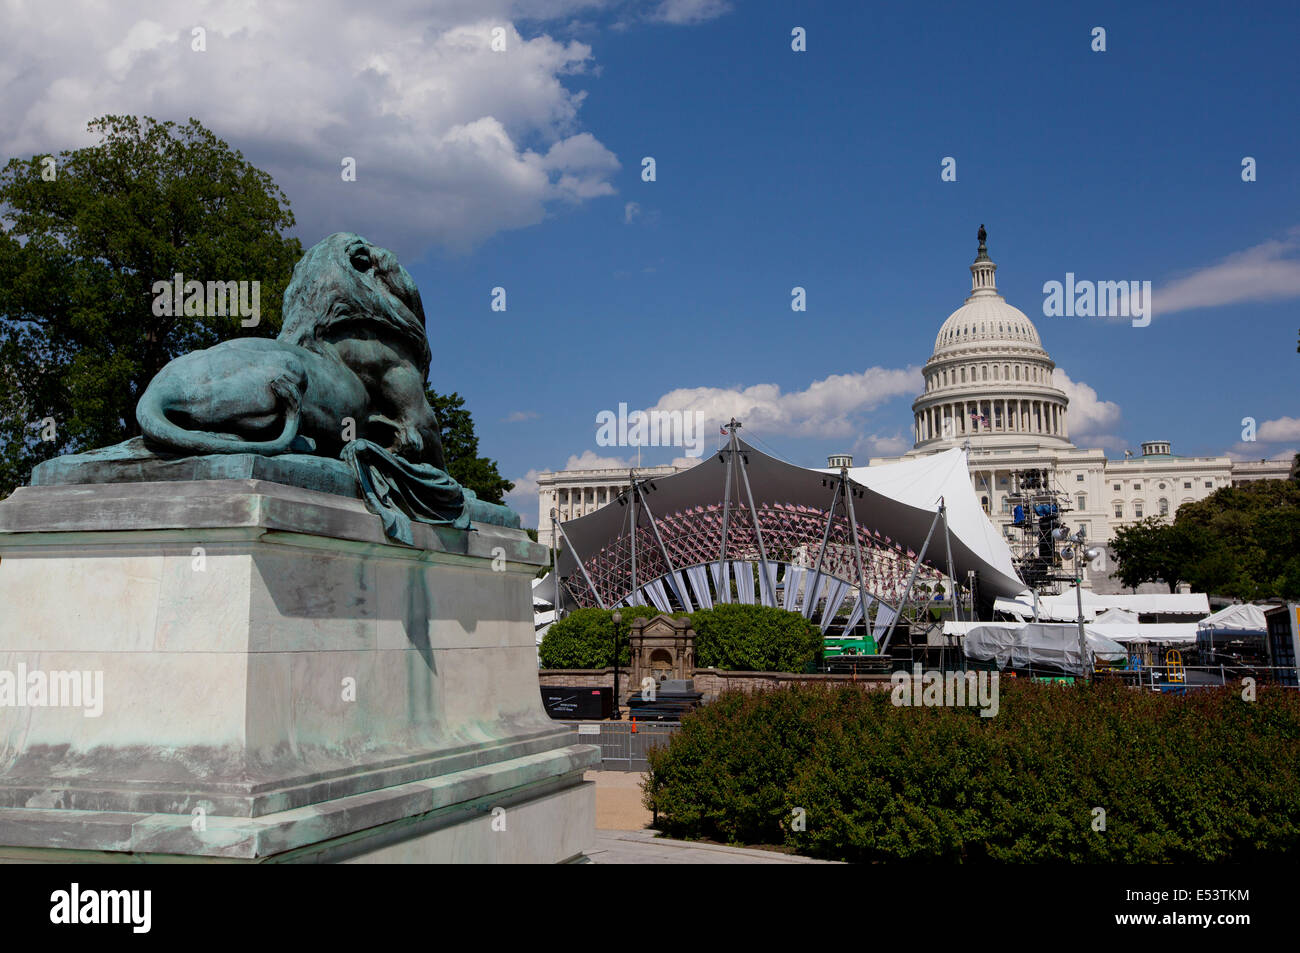 WASHINGTON D.C., 23 de mayo de 2014: El Ulysses S. Grant Memorial es un monumento conmemorativo presidencial en Washington, D.C., honrando American C Foto de stock